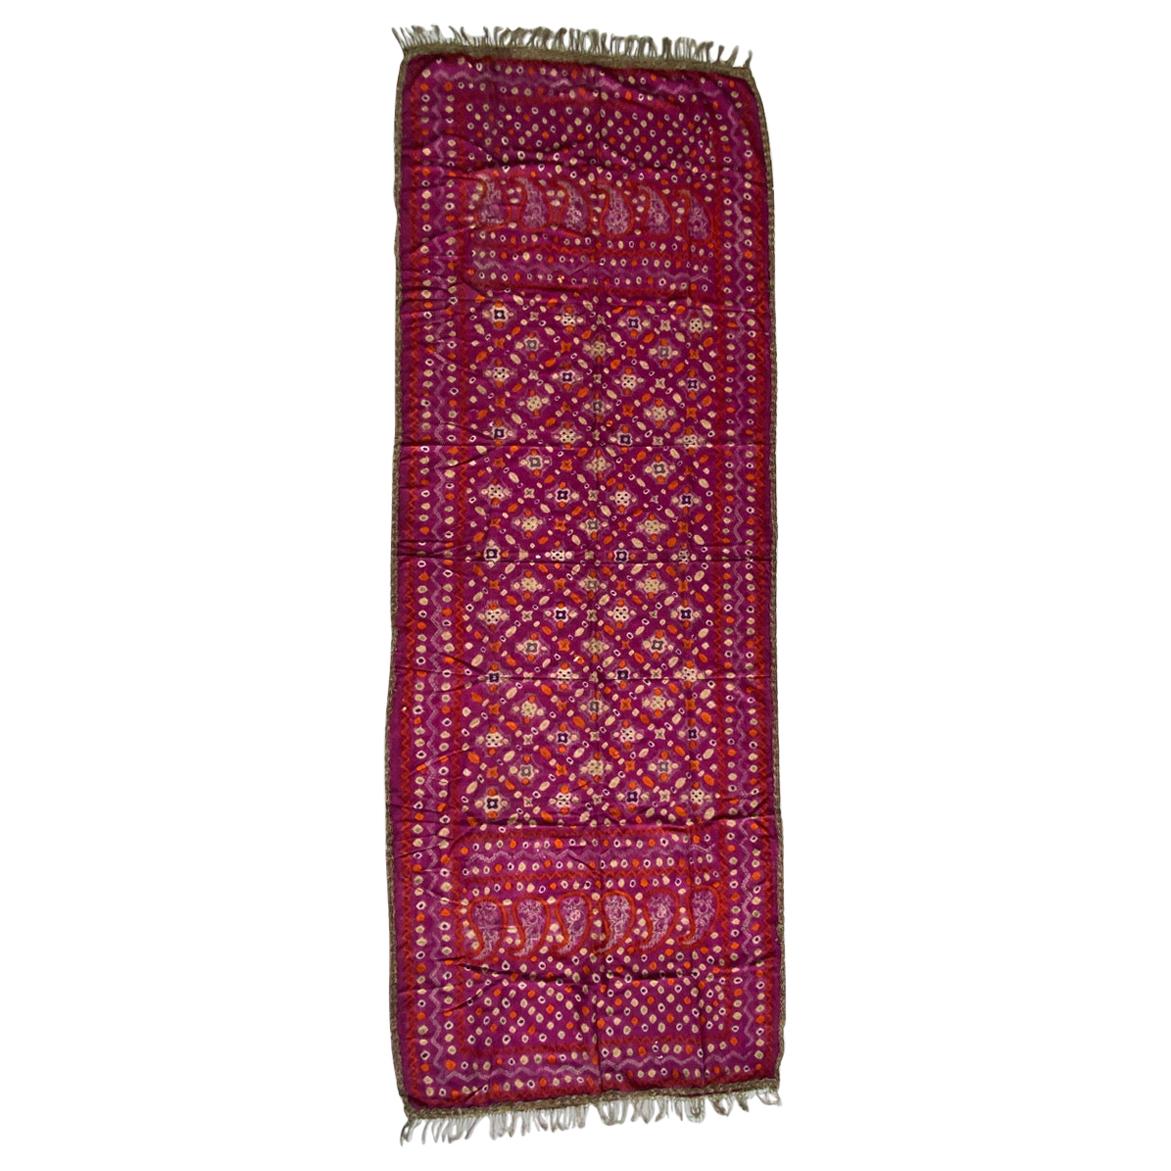 Andrianna Shamaris - Tissu épaule de cérémonie ancien en soie fine aux couleurs vives